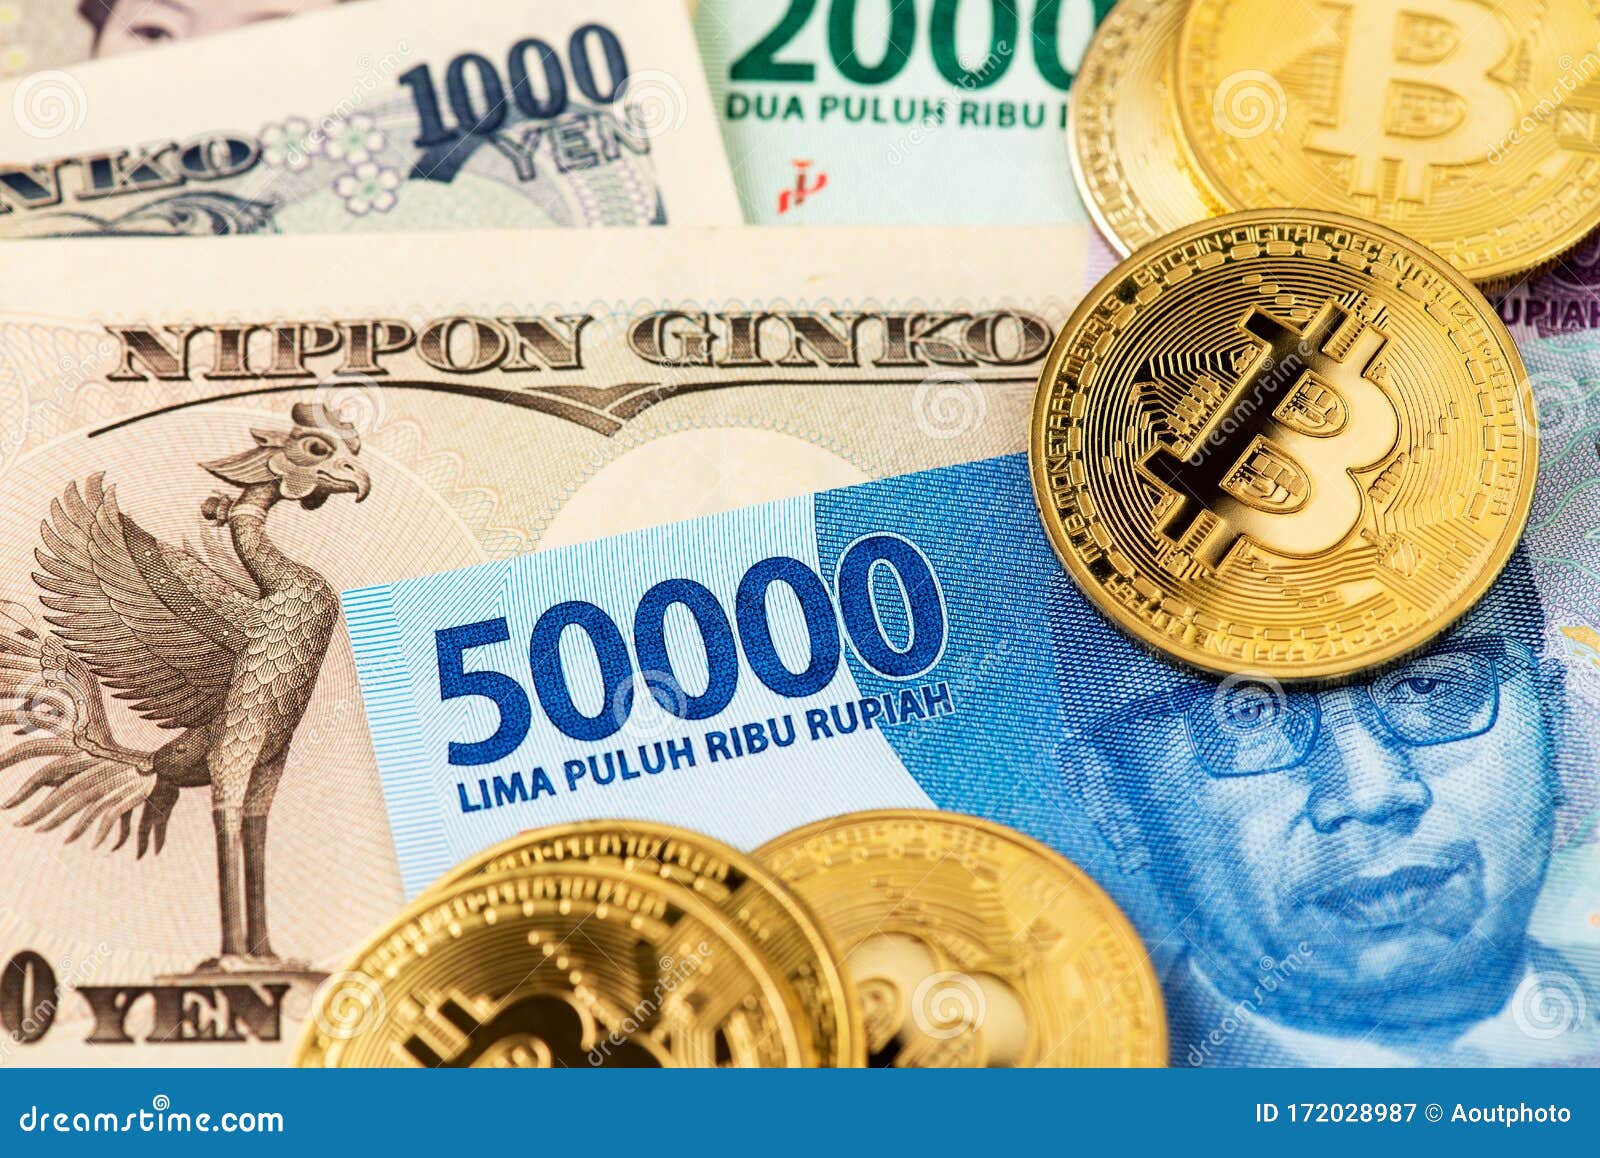 Konvertuoti Bitcoins (BTC) ir Indonezijos Rupiahs (IDR) : Valiuta valiutų keitimo kurso skaičiuoklė